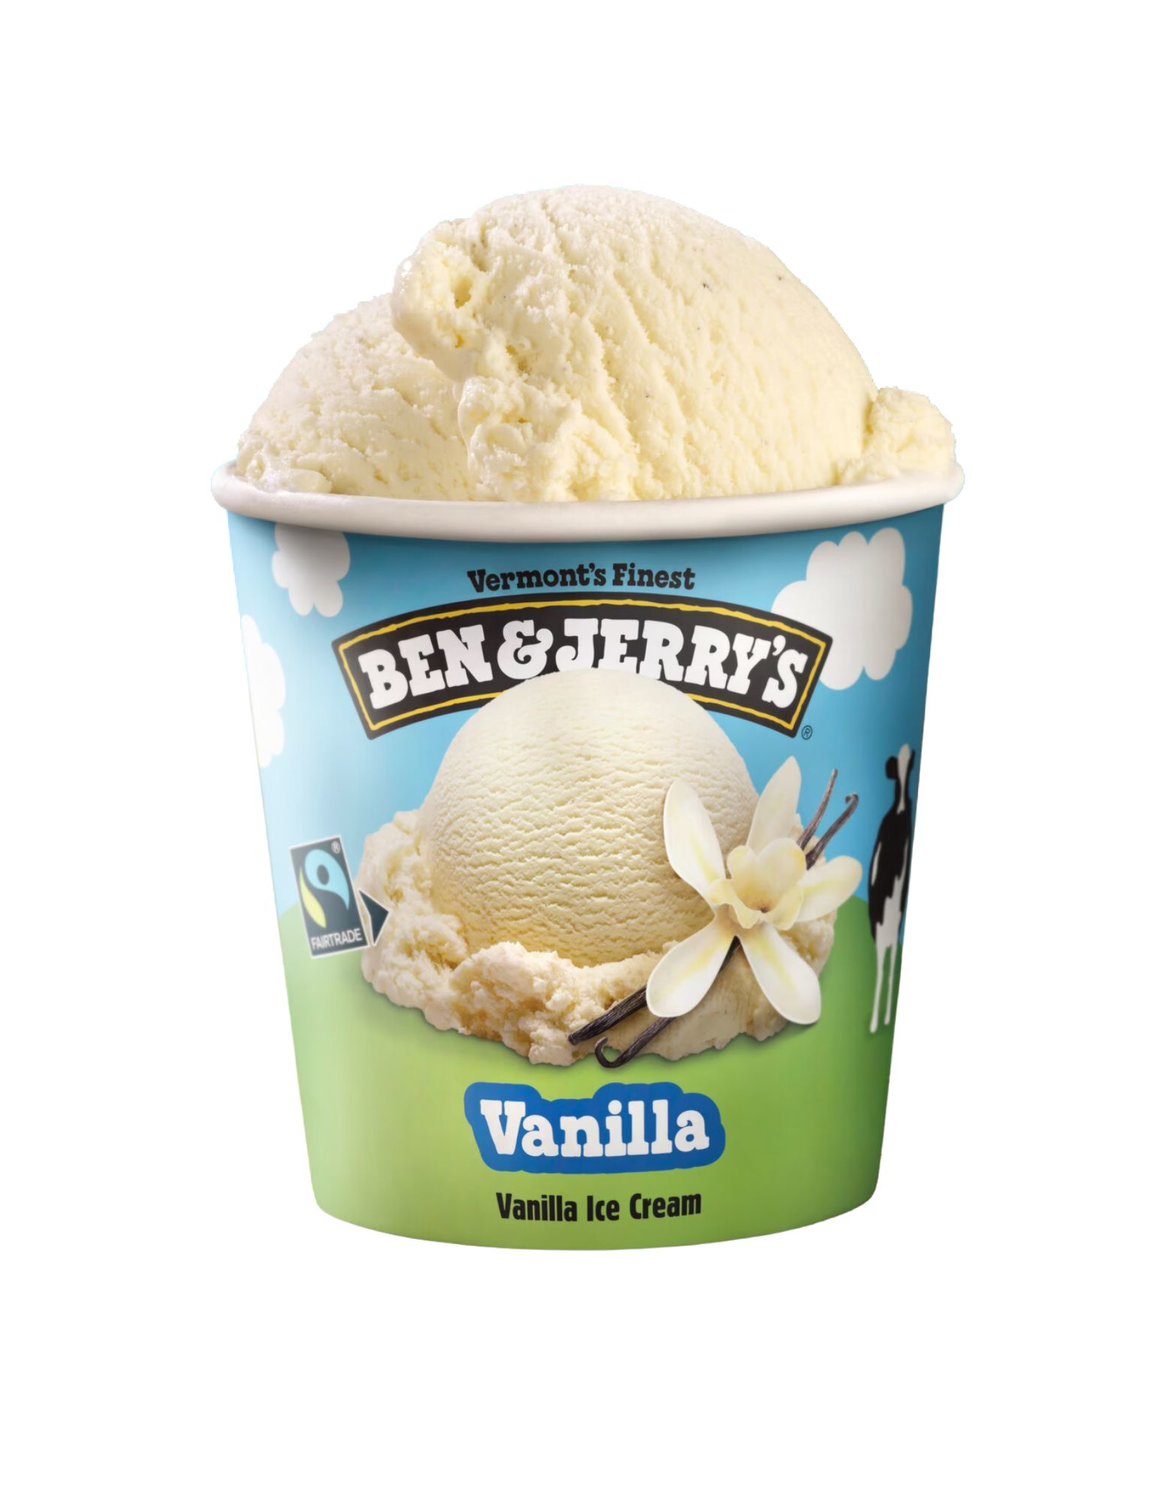 A pint of Ben & Jerry's vanilla ice cream